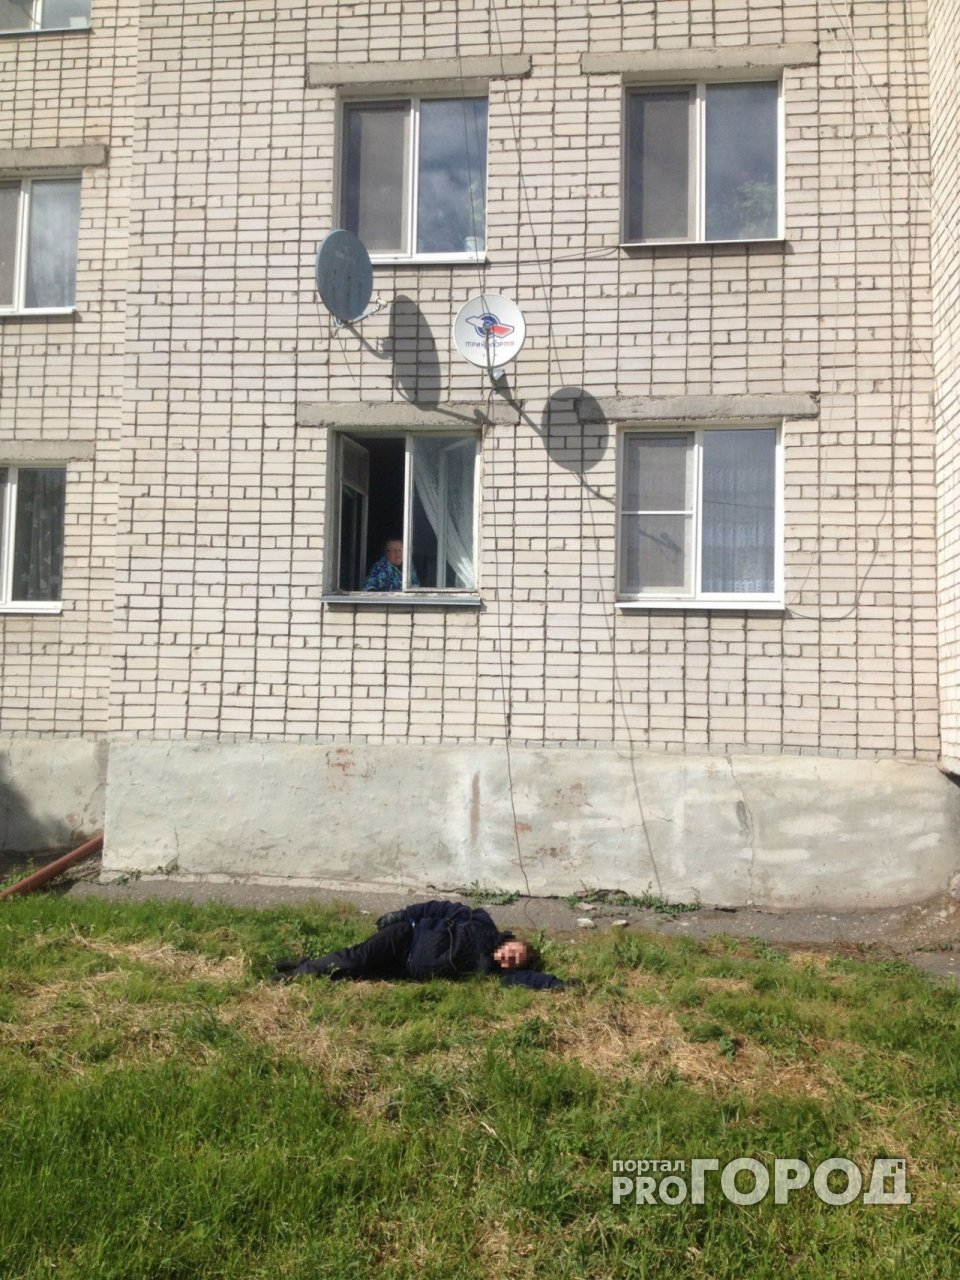 В Йошкар-Оле мужчина сорвался с 4 этажа, пытаясь спуститься по стене на бельевой веревке